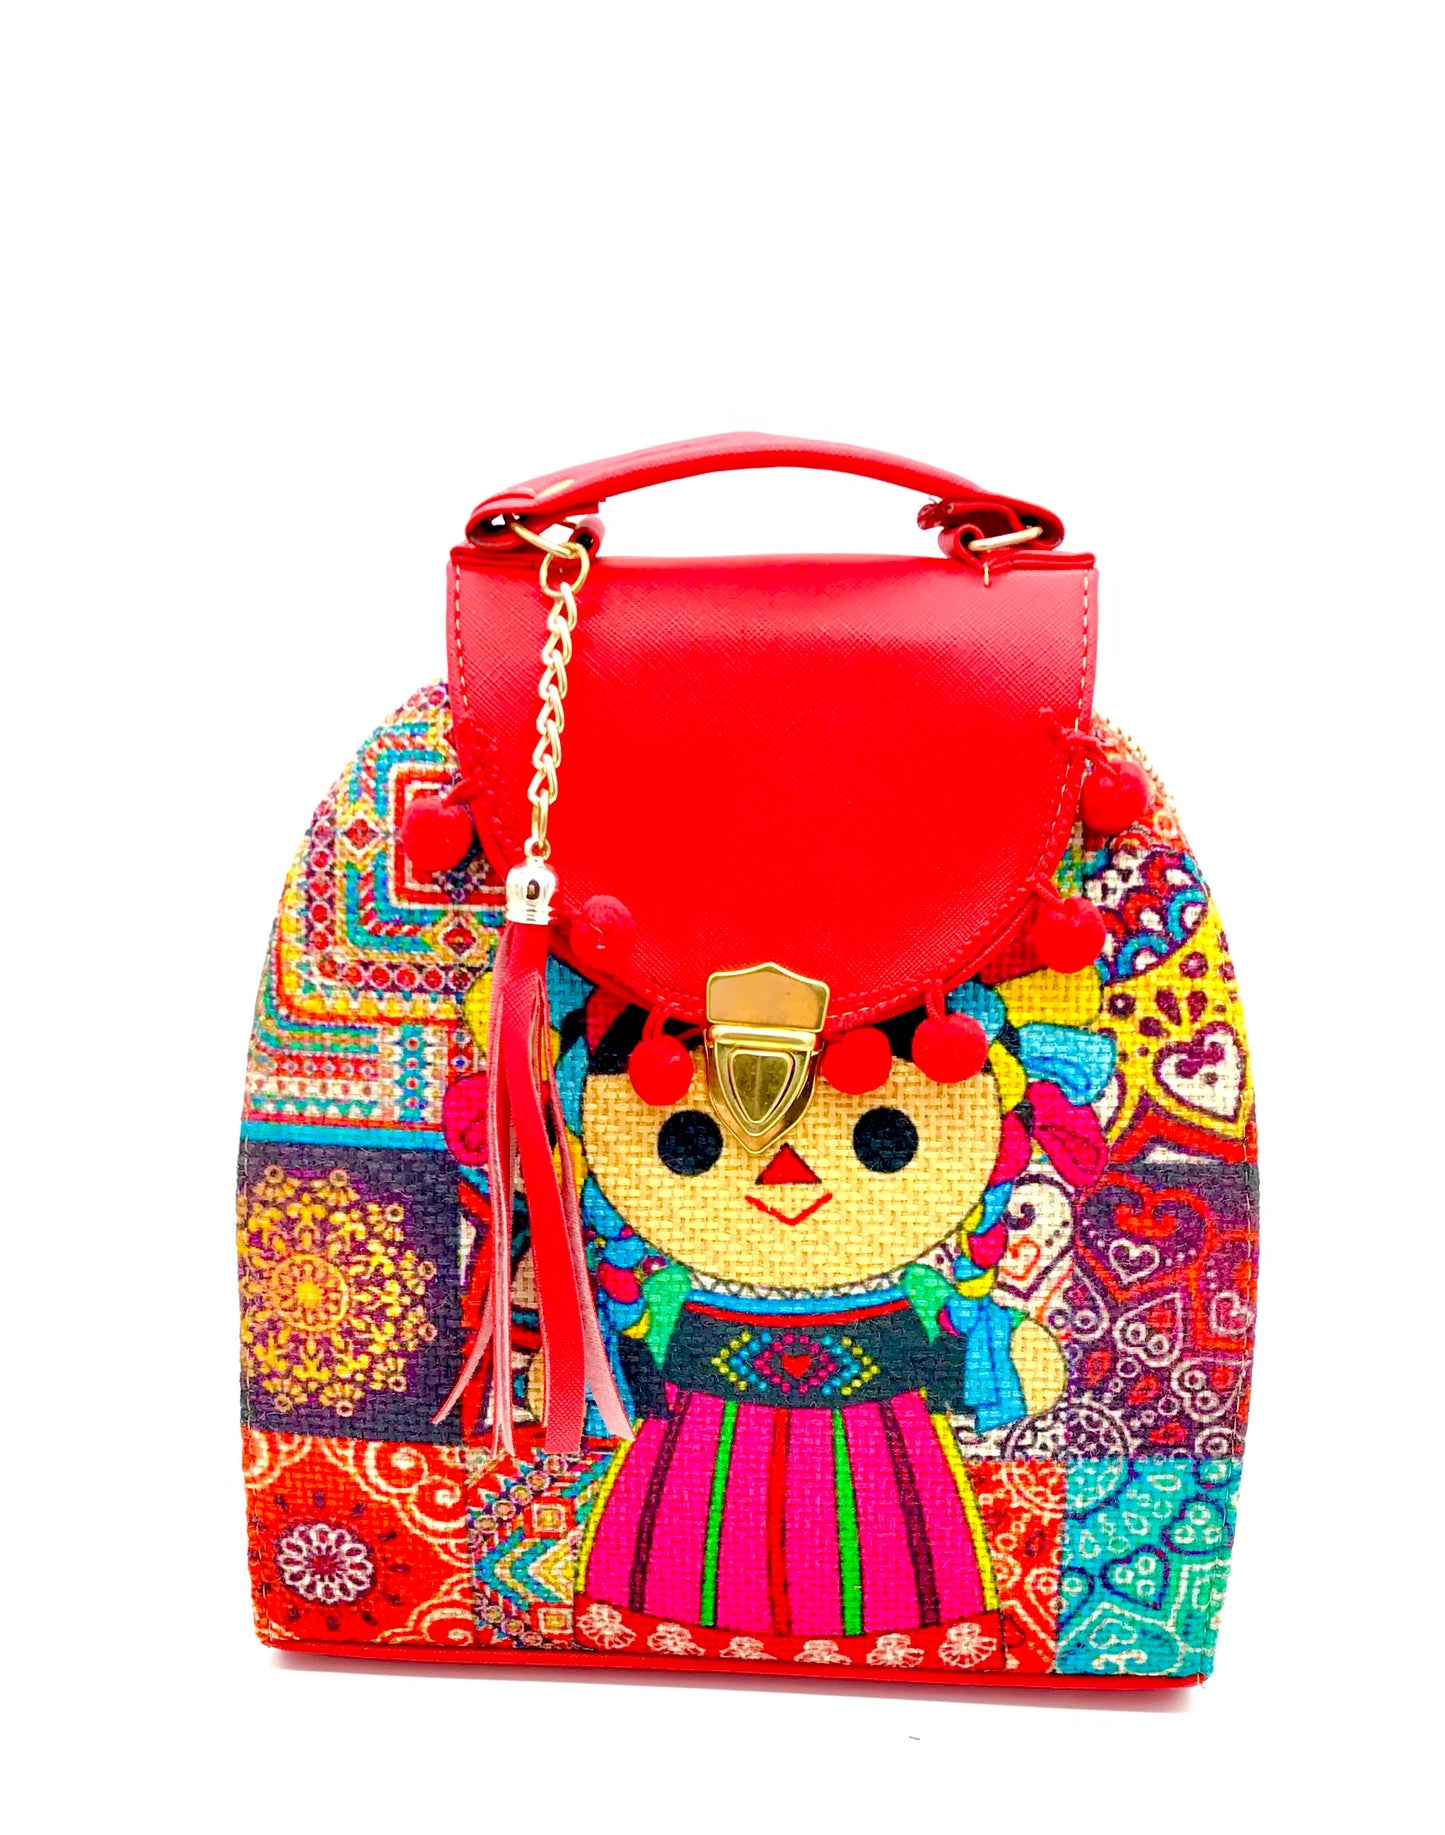 Handbag and Backpack Chiapaneco Embroidery